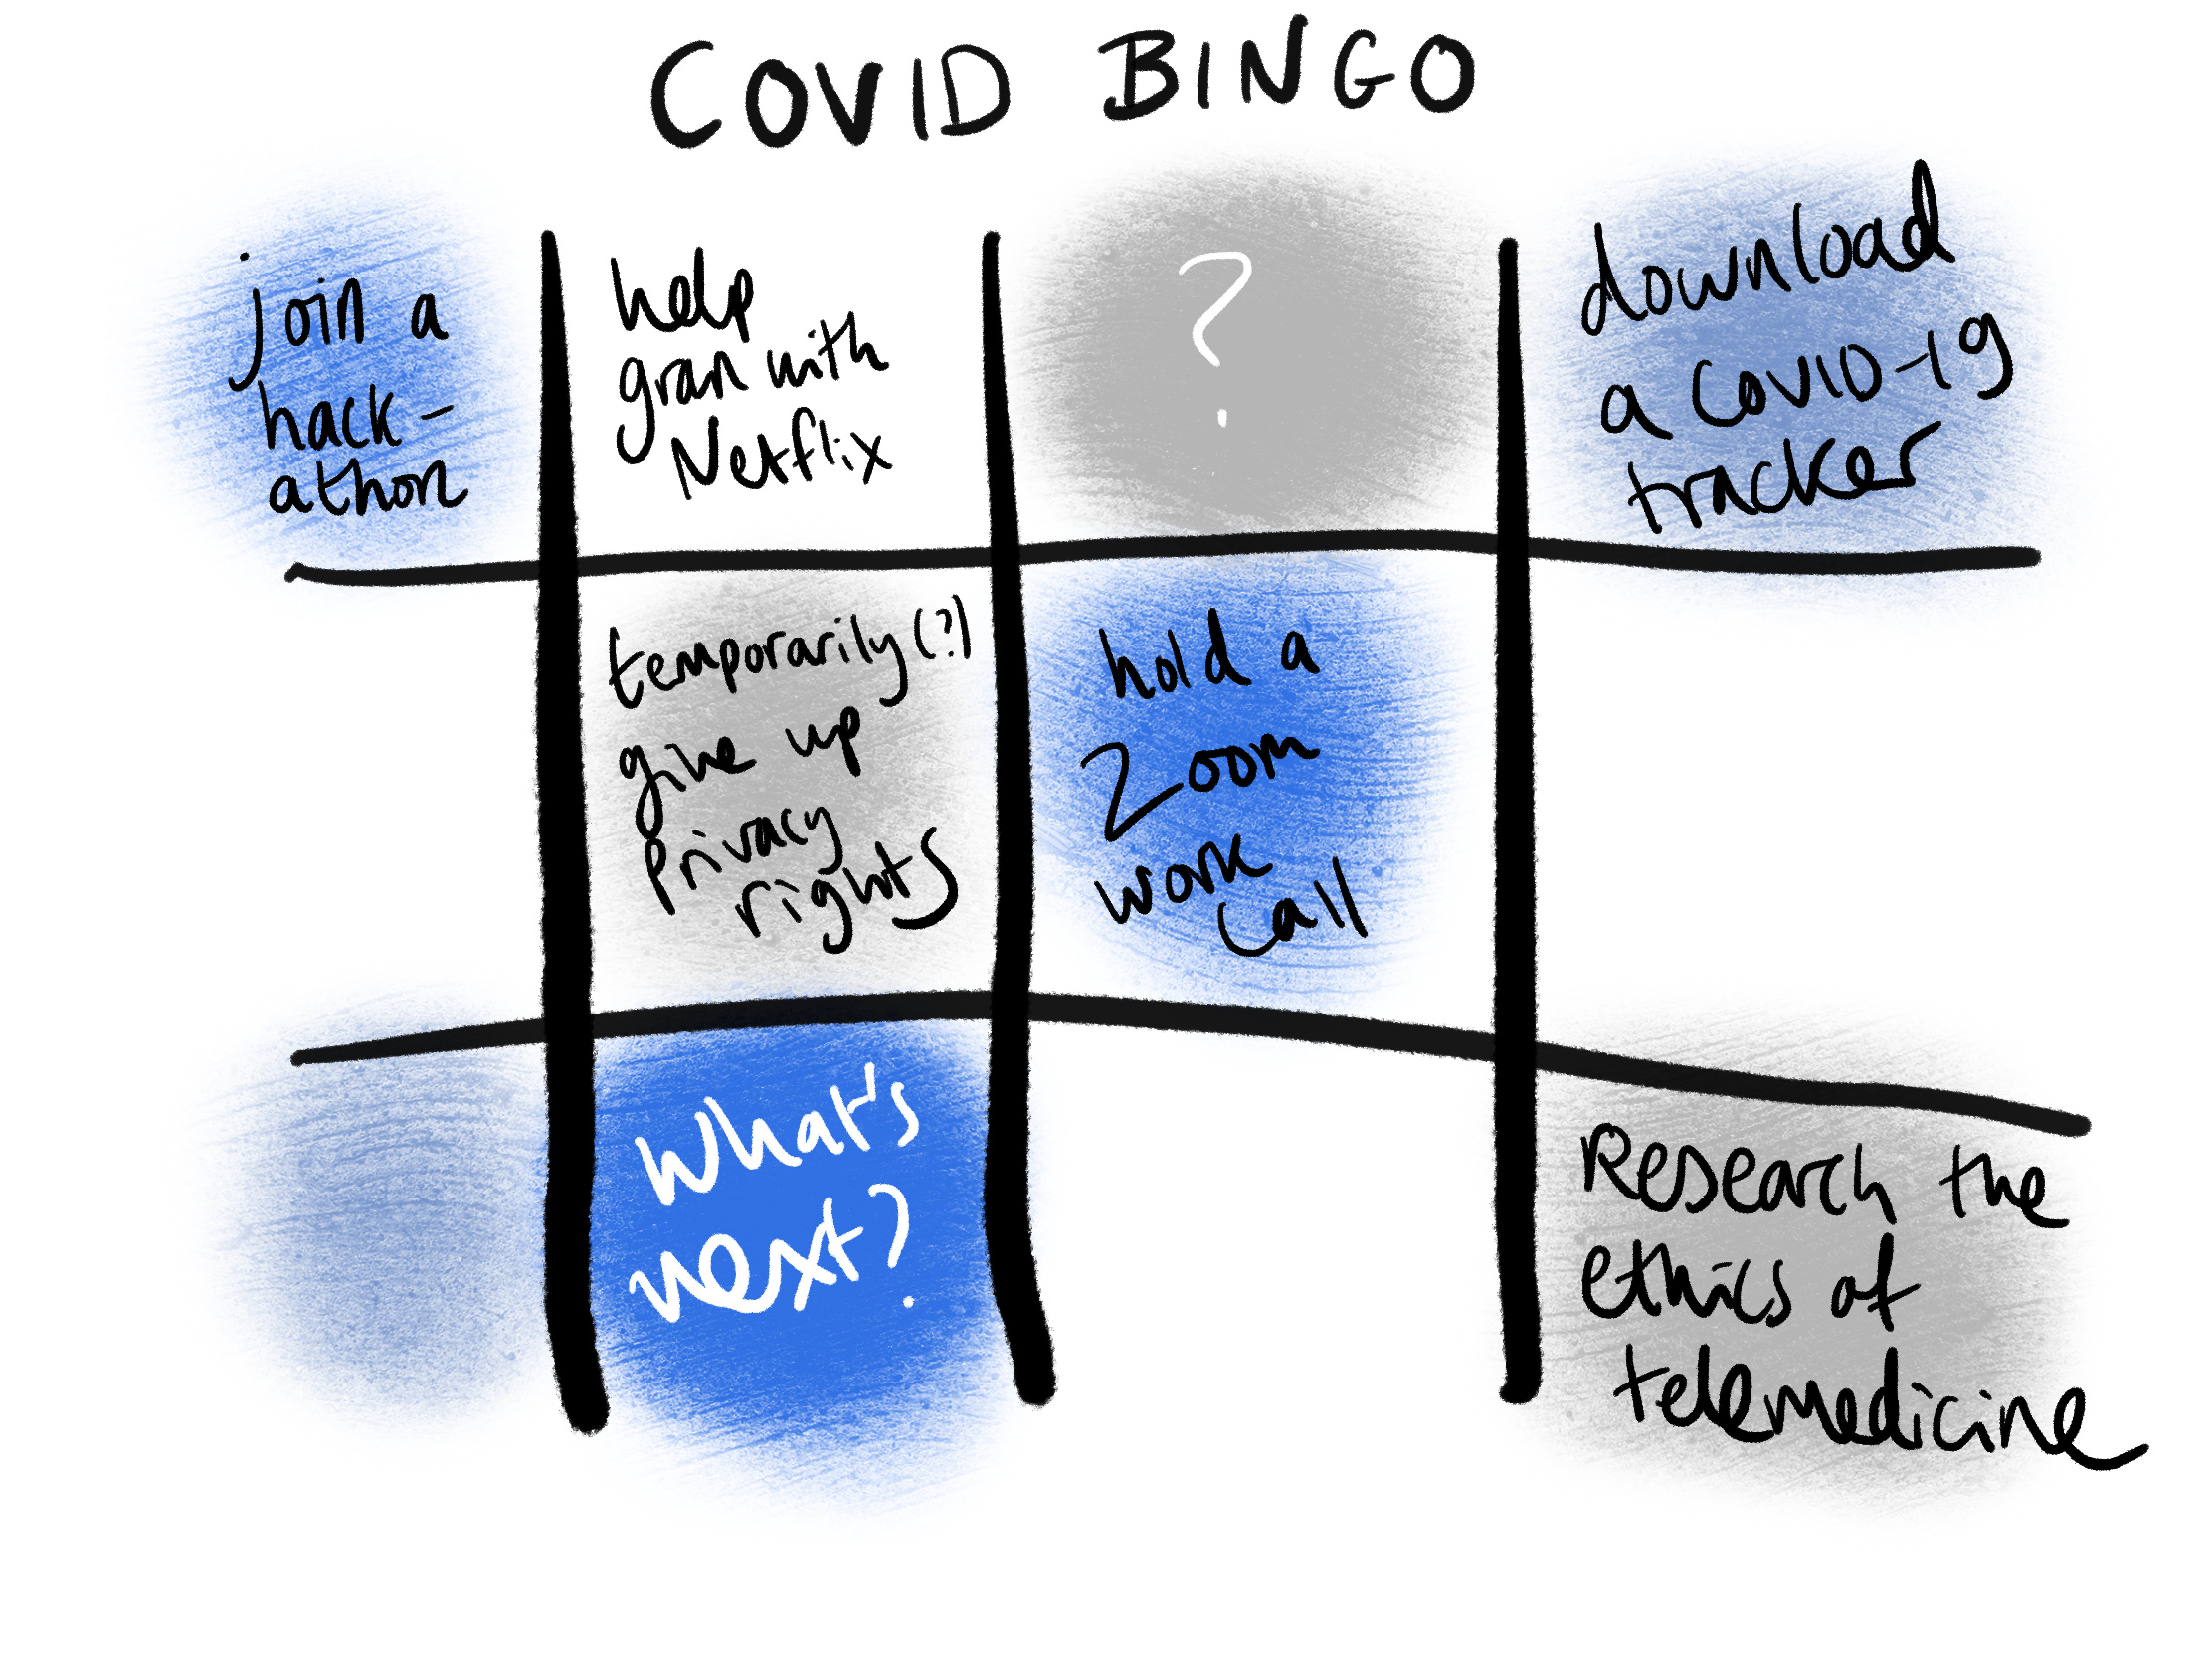 Covid bingo 